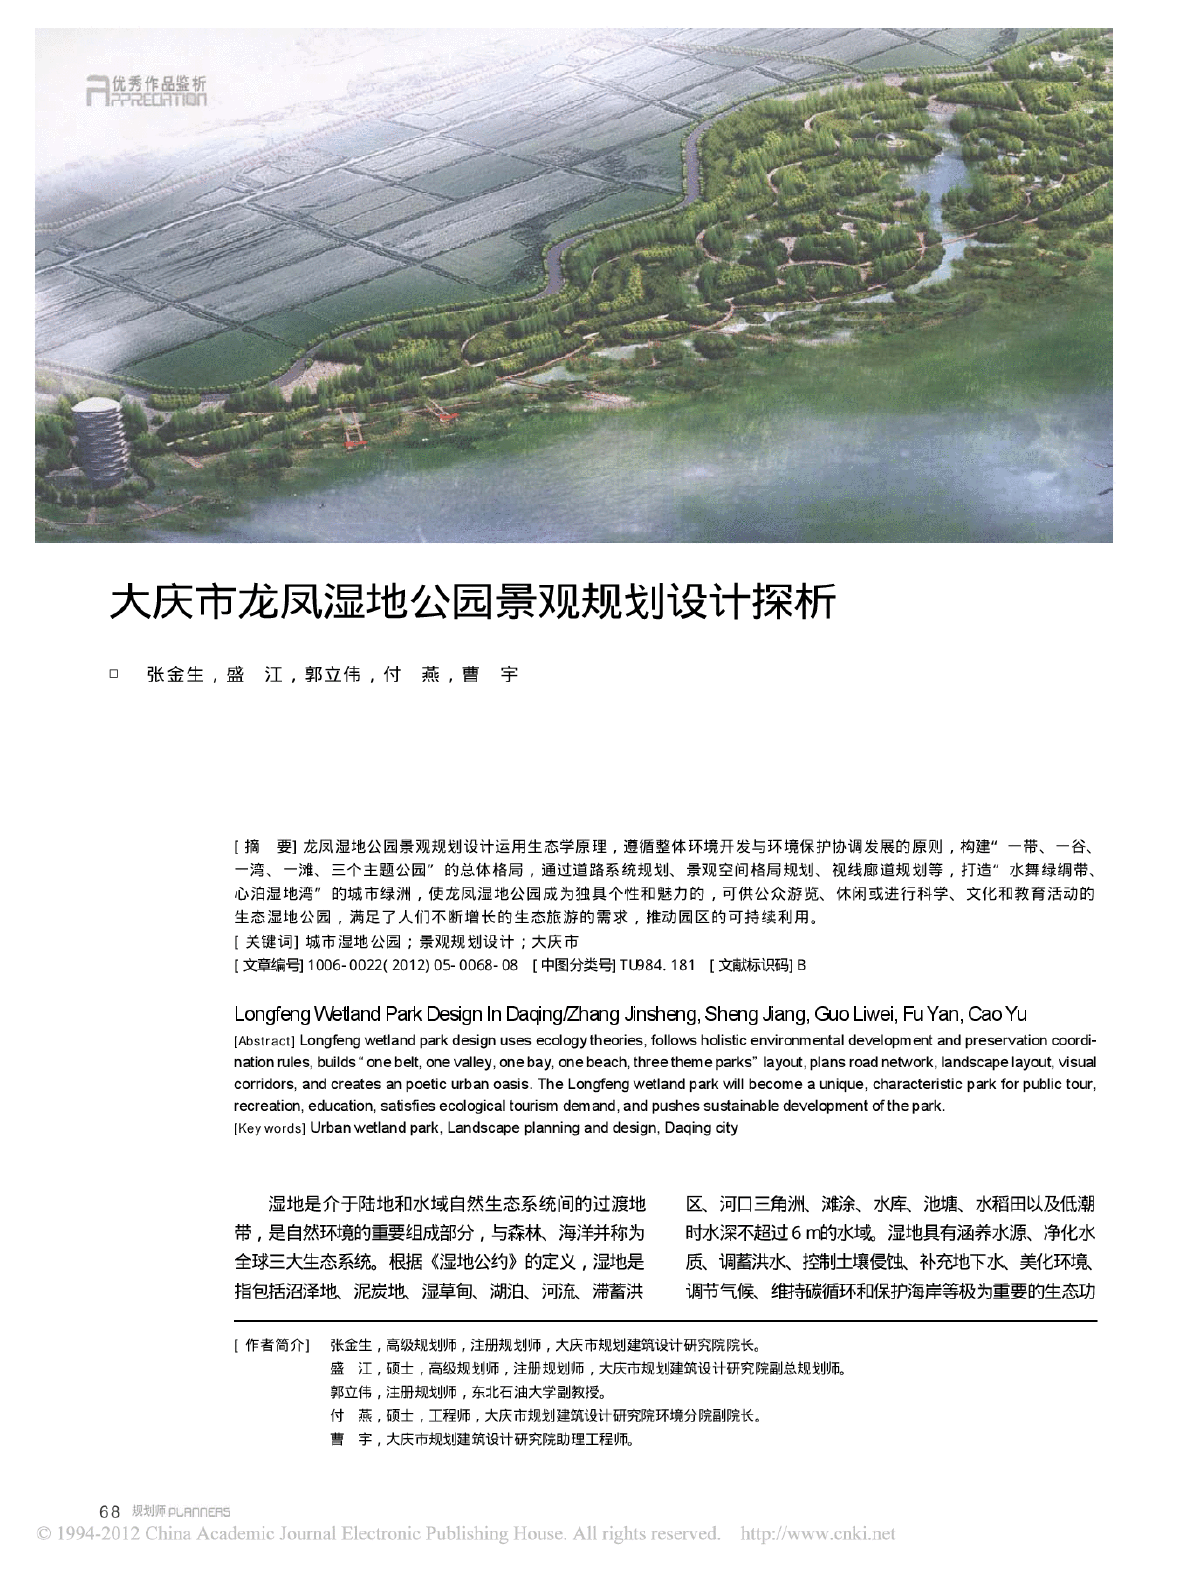 大庆市龙凤湿地公园景观规划设计探析-图一